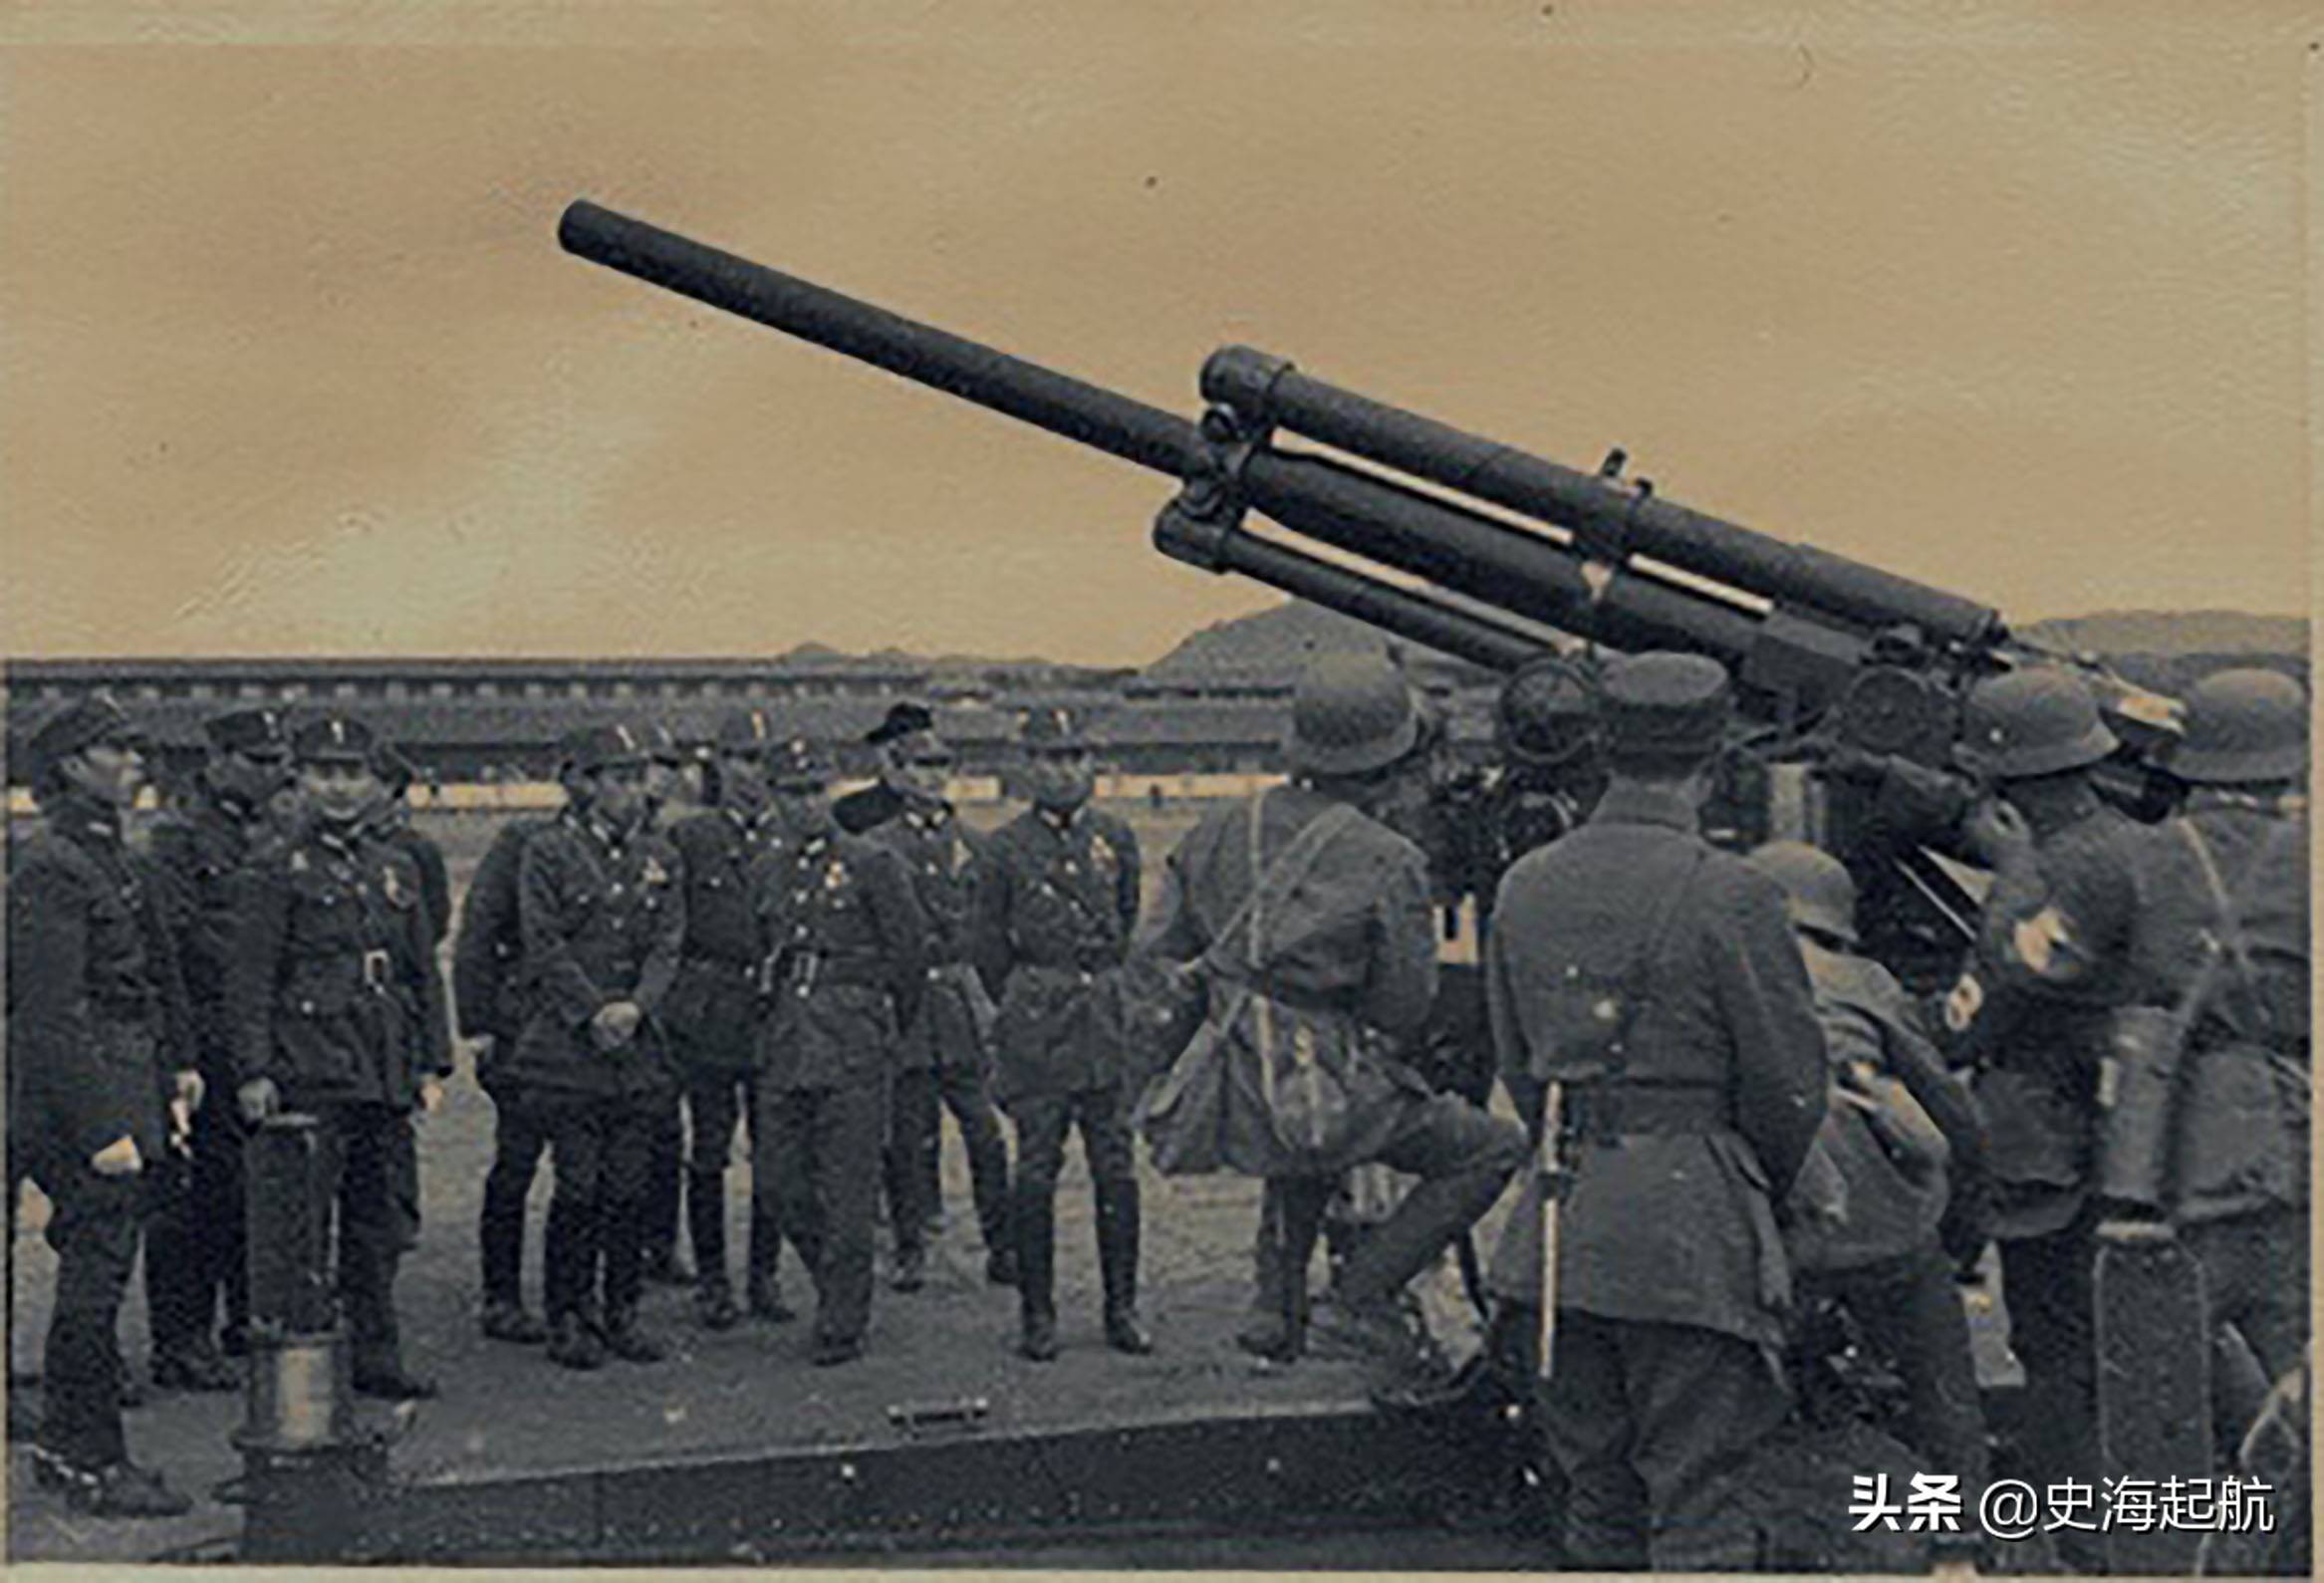 抗战时中国军队武器照片:图3是国军的坦克,图6是国军的重机枪